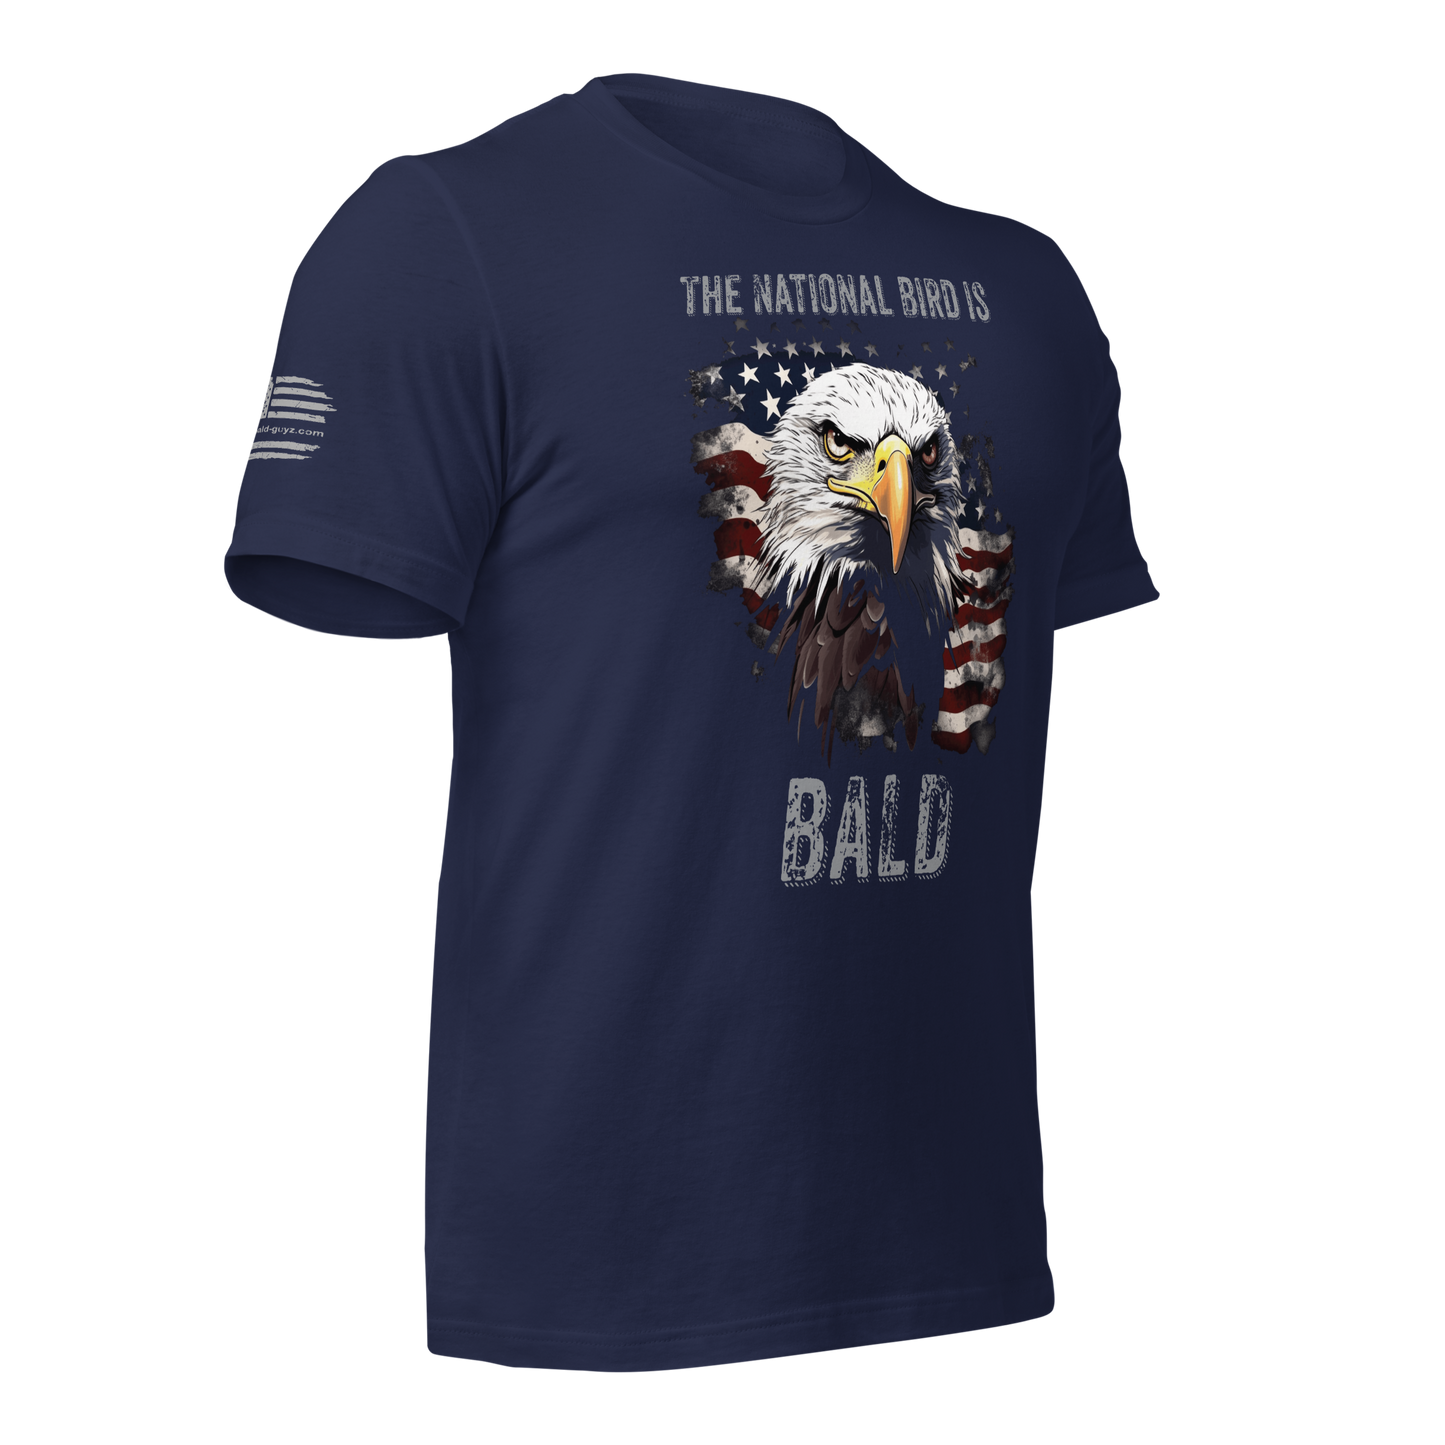 National Bird is Bald t-shirt